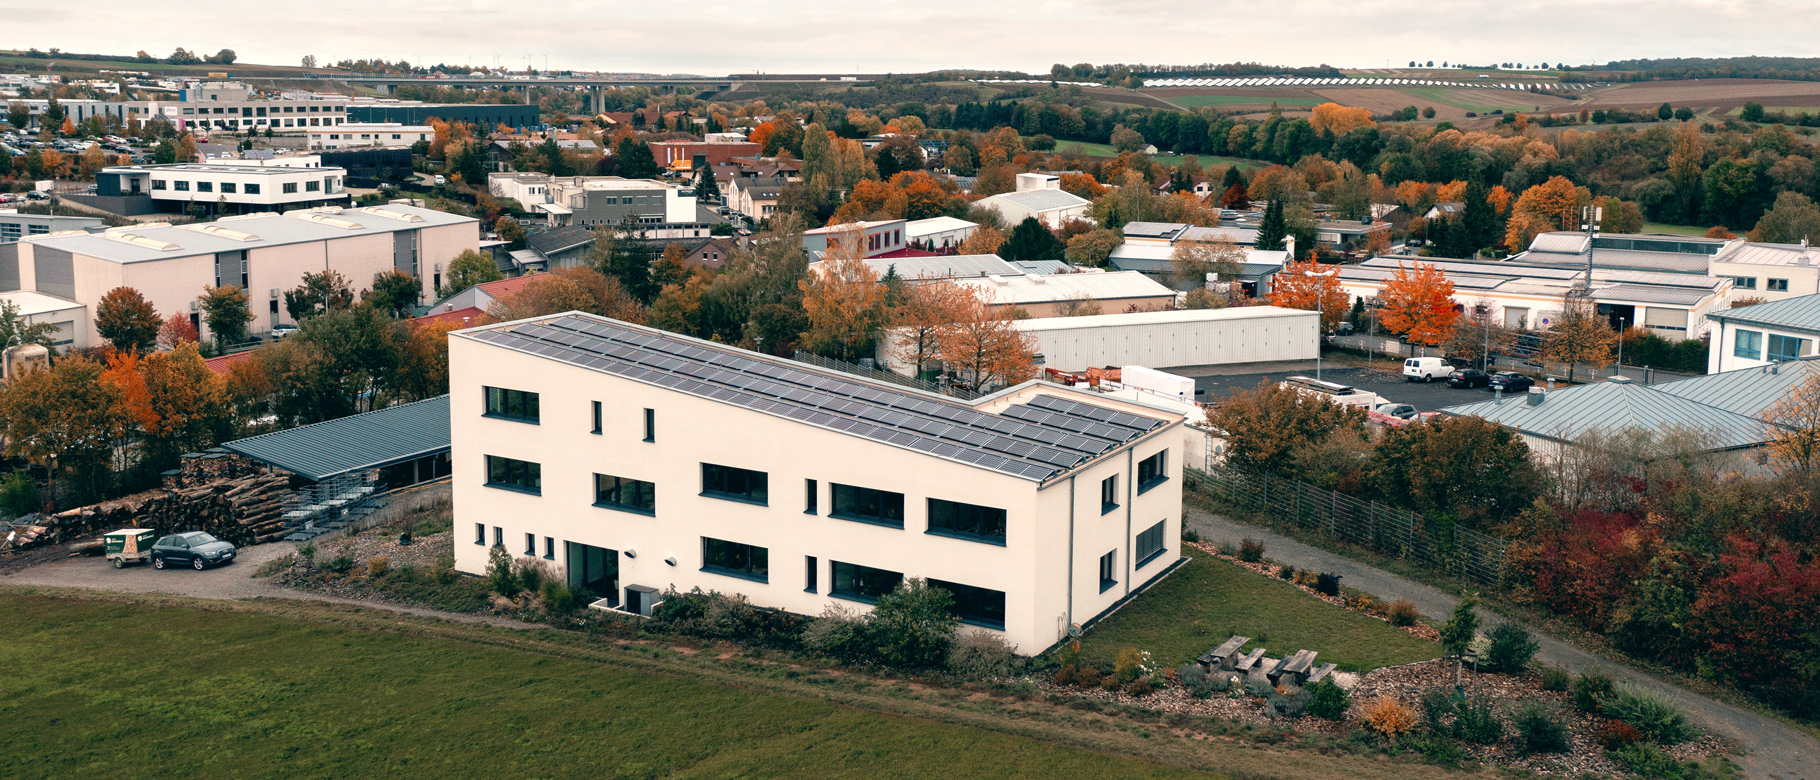 Büro der SYMBION GmbH in Estenfeld